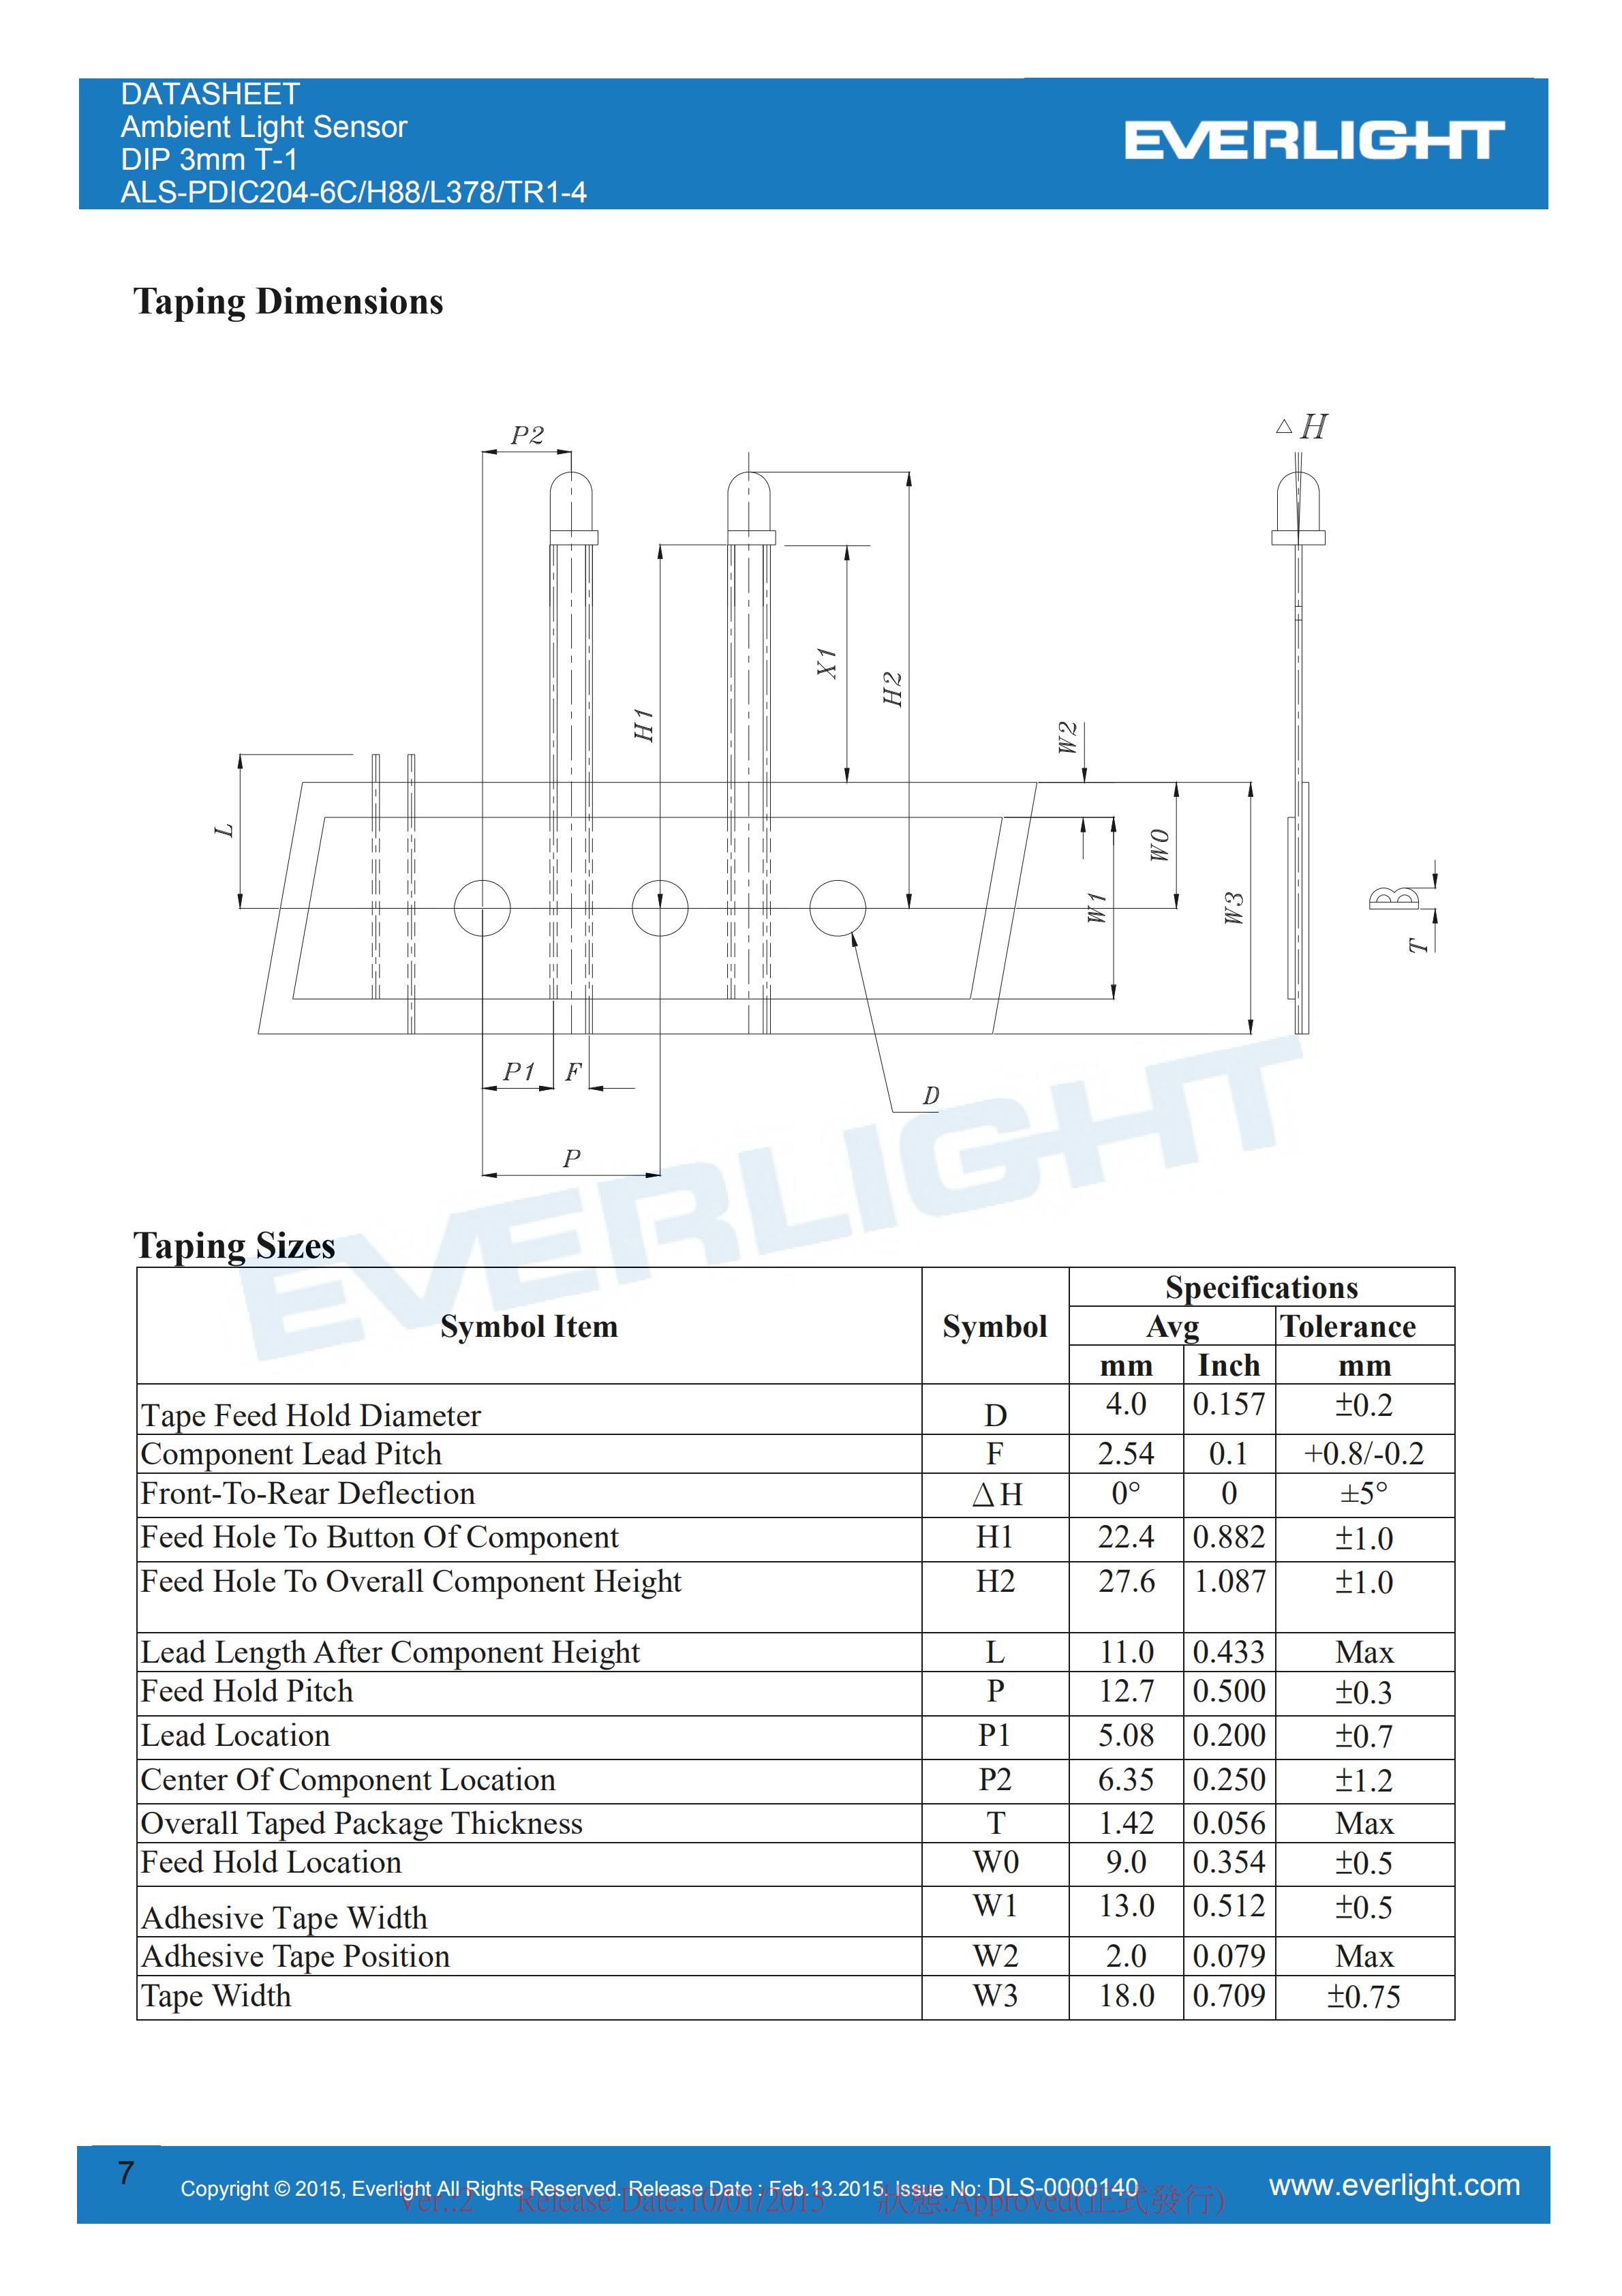 亿光环境光传感器插件ALS-PDIC204-6C/H88/L378/TR1-4规格书（数据表PDF）